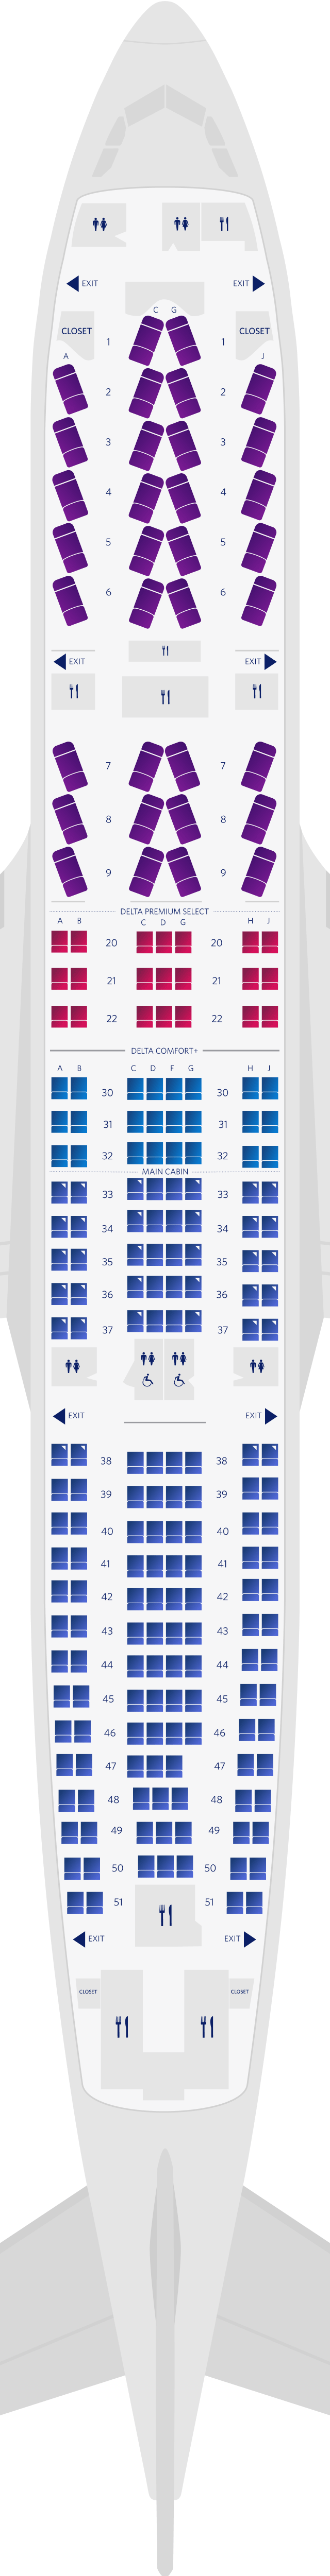 Plan des sièges de l'Airbus A330-200 4